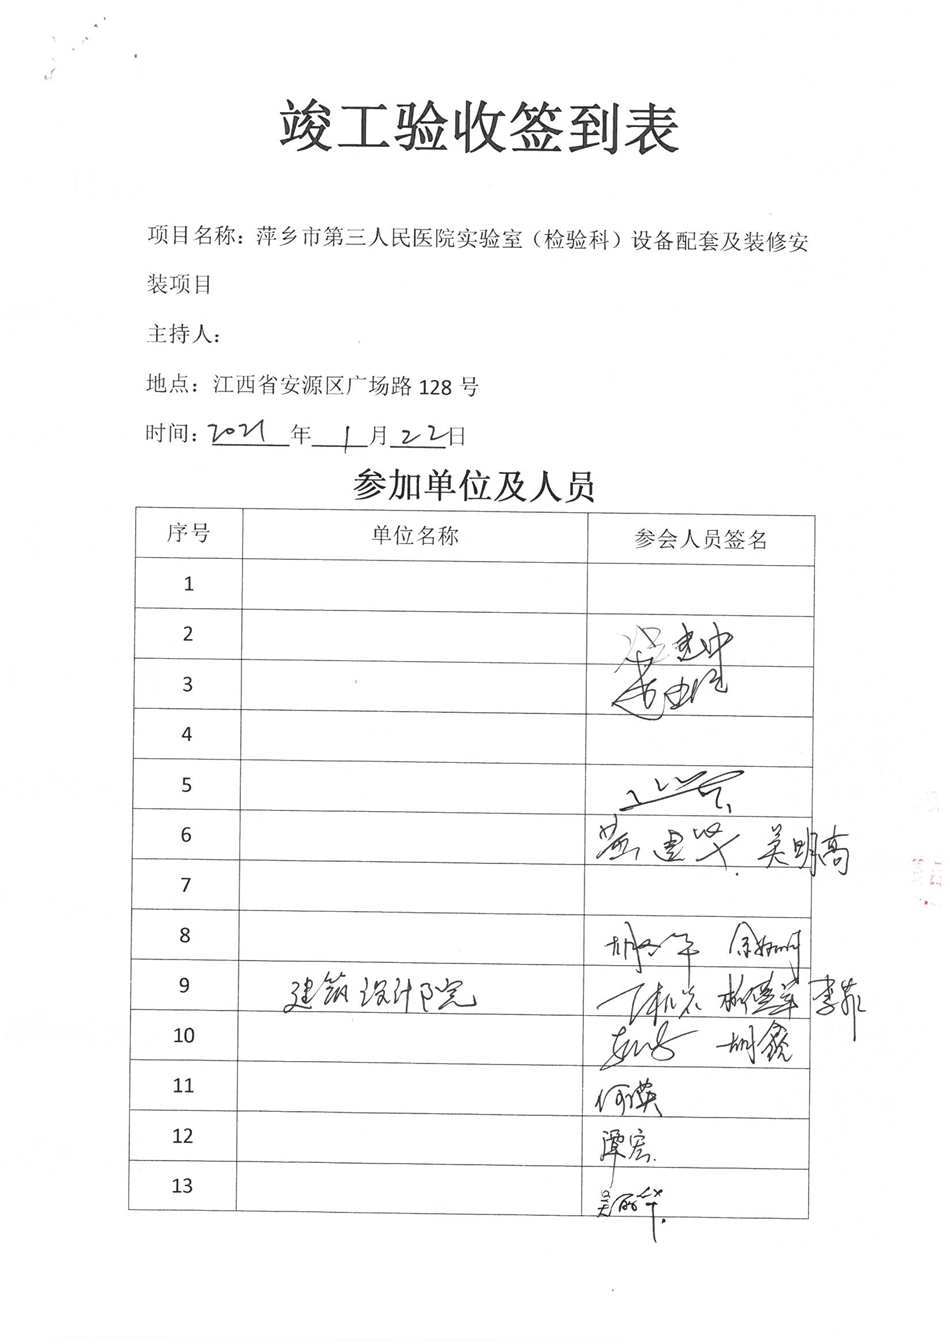 萍乡市第三人民医院验收单_页面_3.jpg